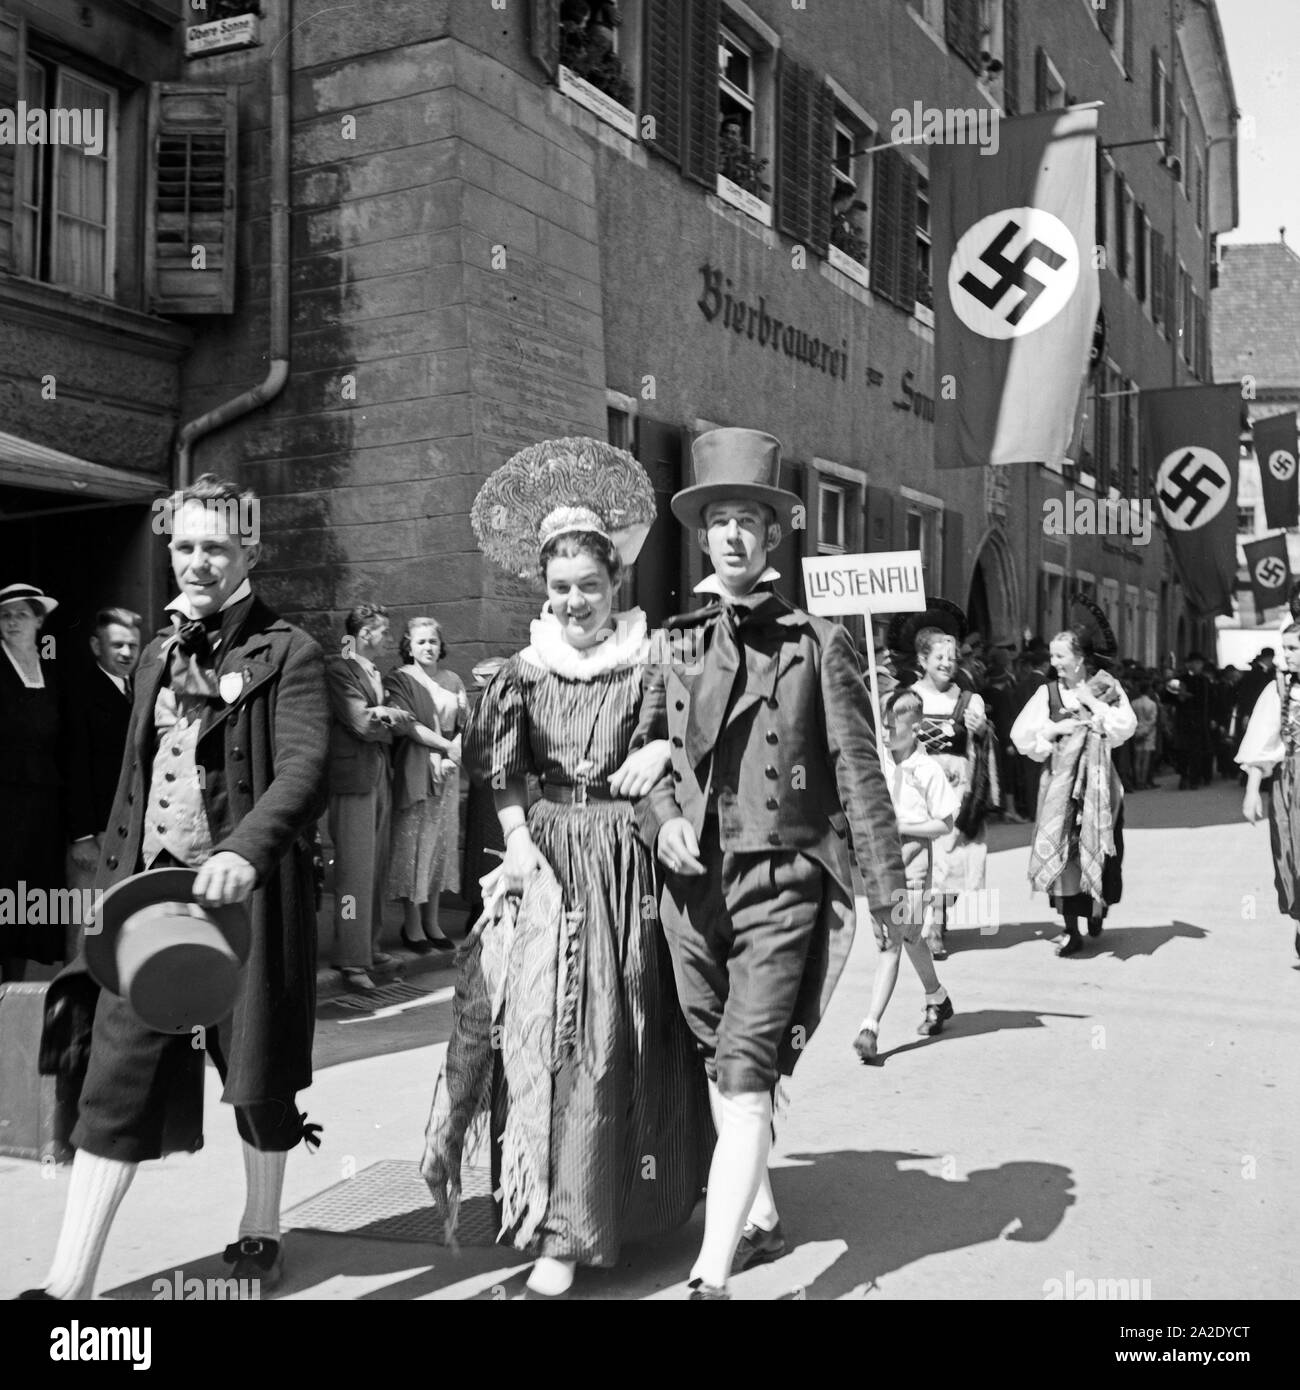 Trachtenumzug durch die Straßen von Konstanz, Deutschland 1930er Jahre. Traditinal costume parade through the streets of Constance, Germany 1930s. Stock Photo